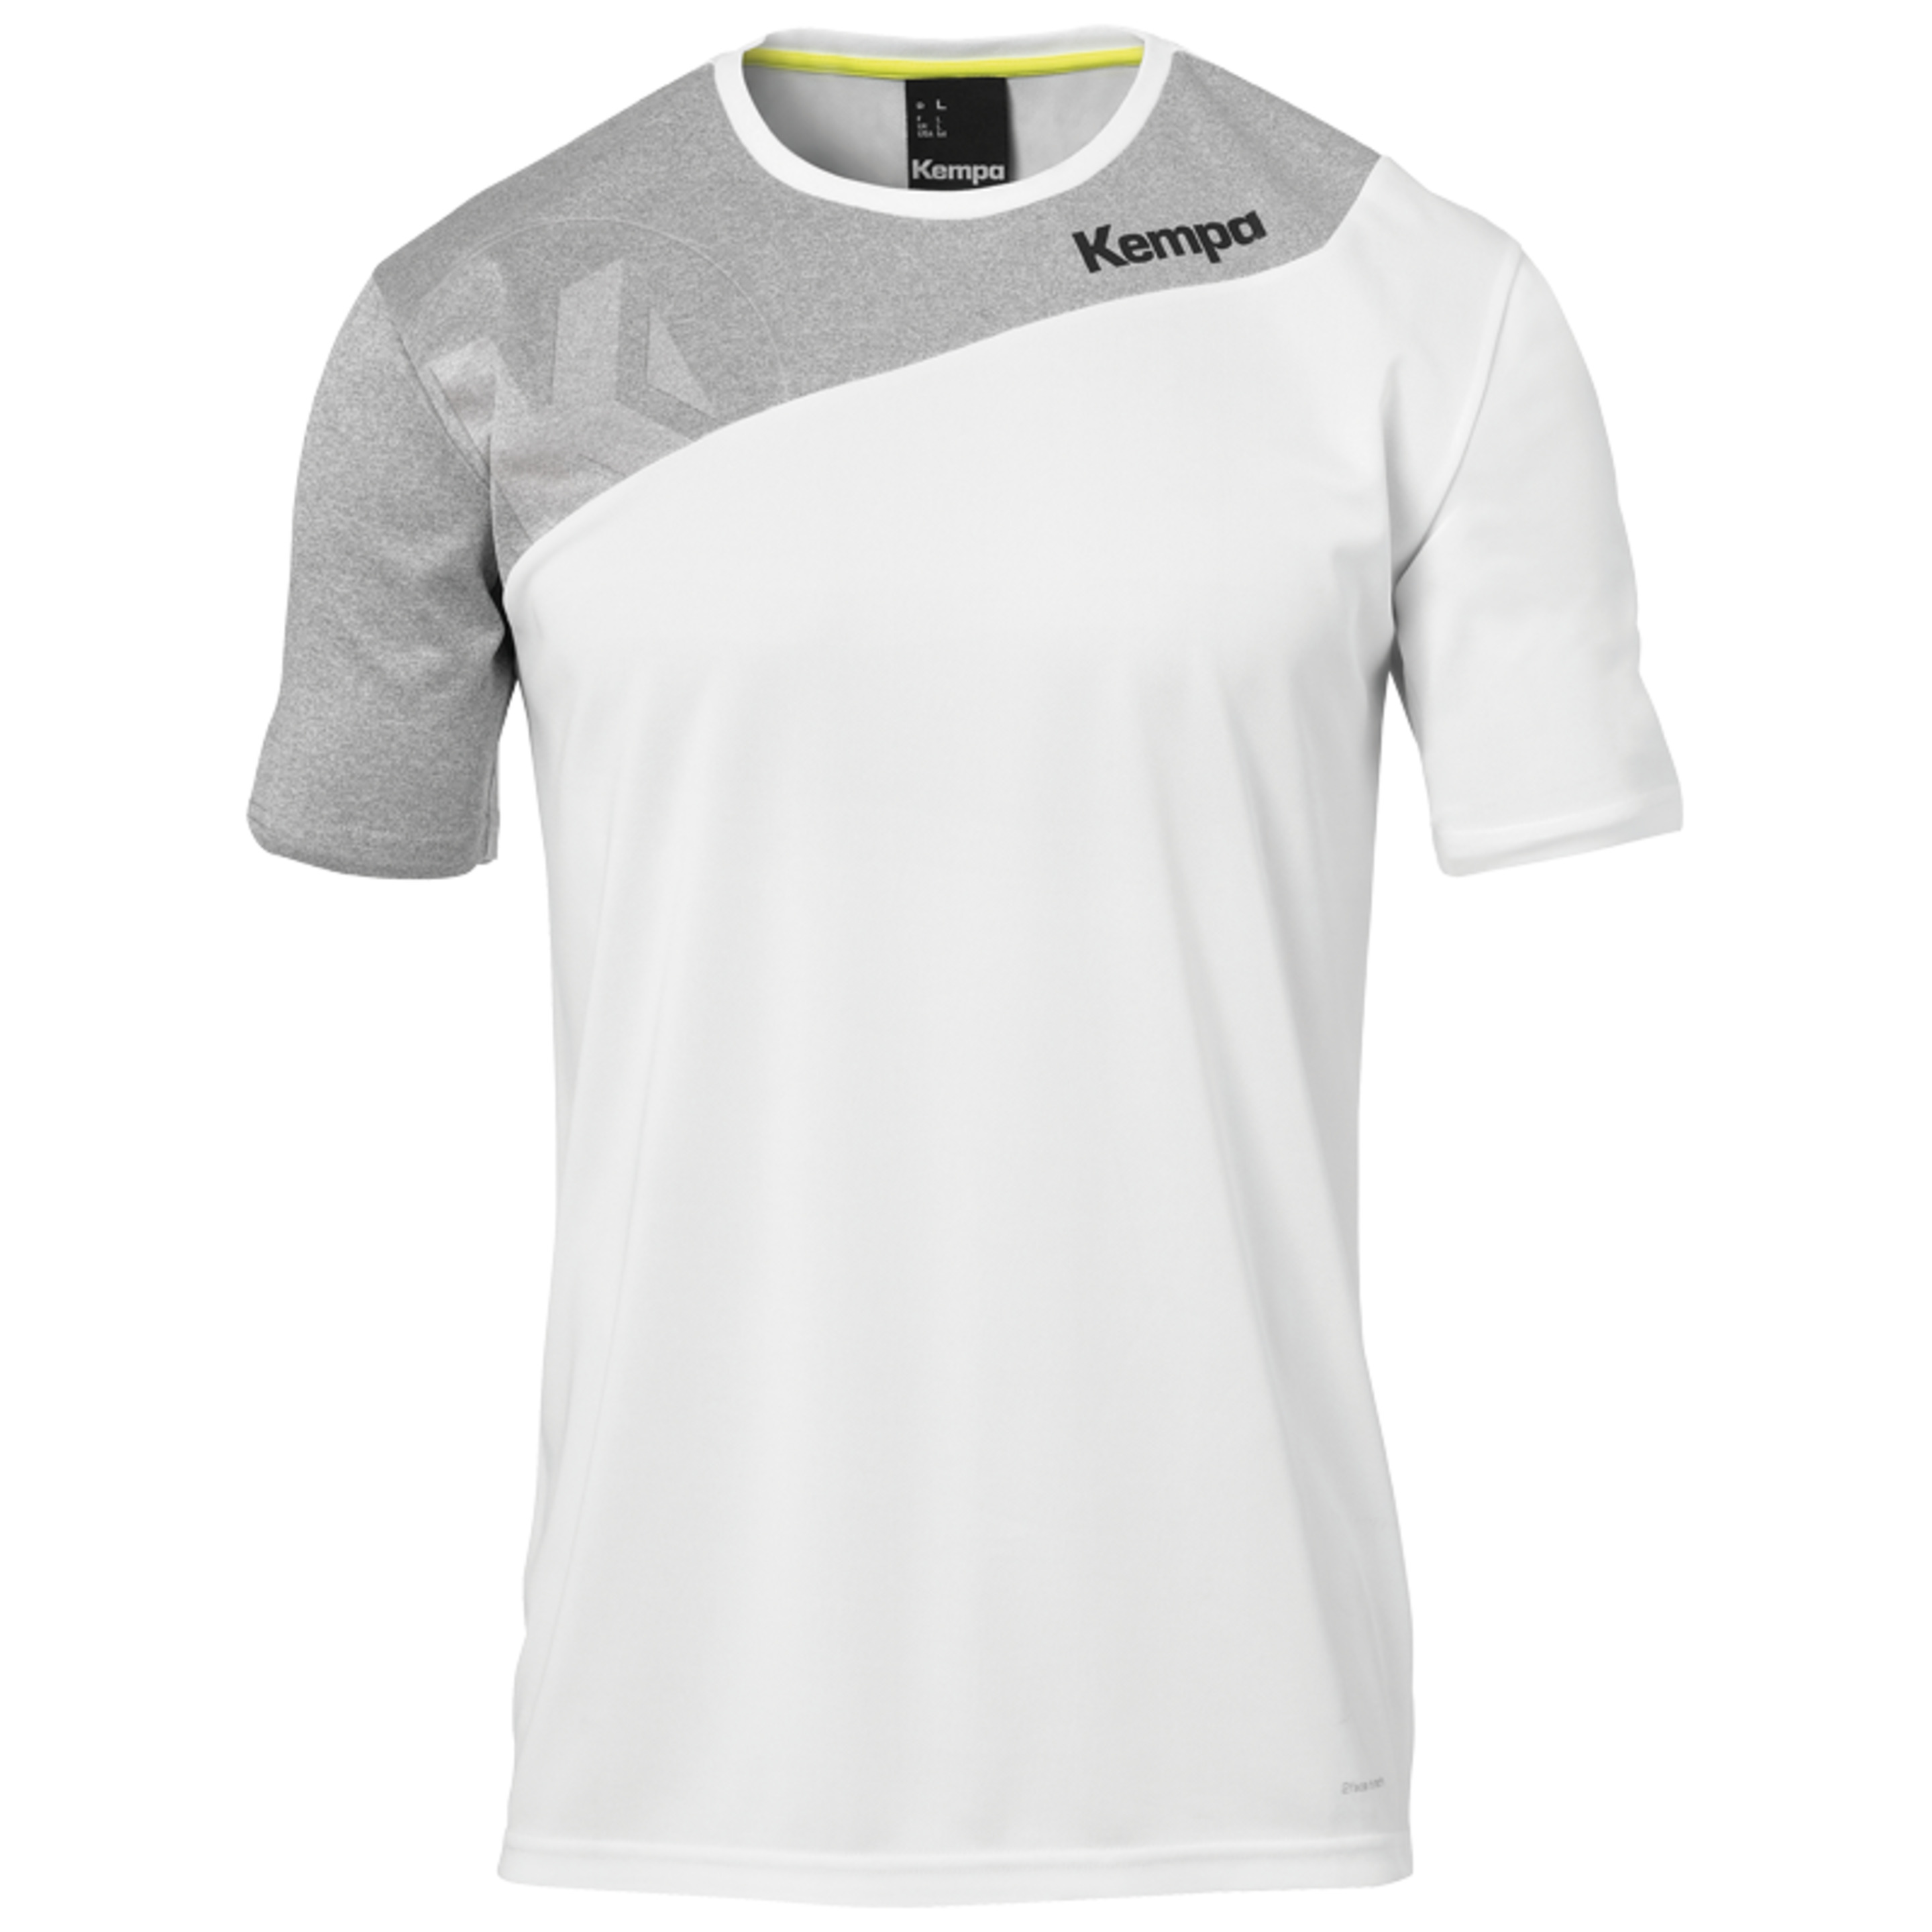 Core 2.0 Shirt Blanco/gris Oscuro Mezcla Kempa